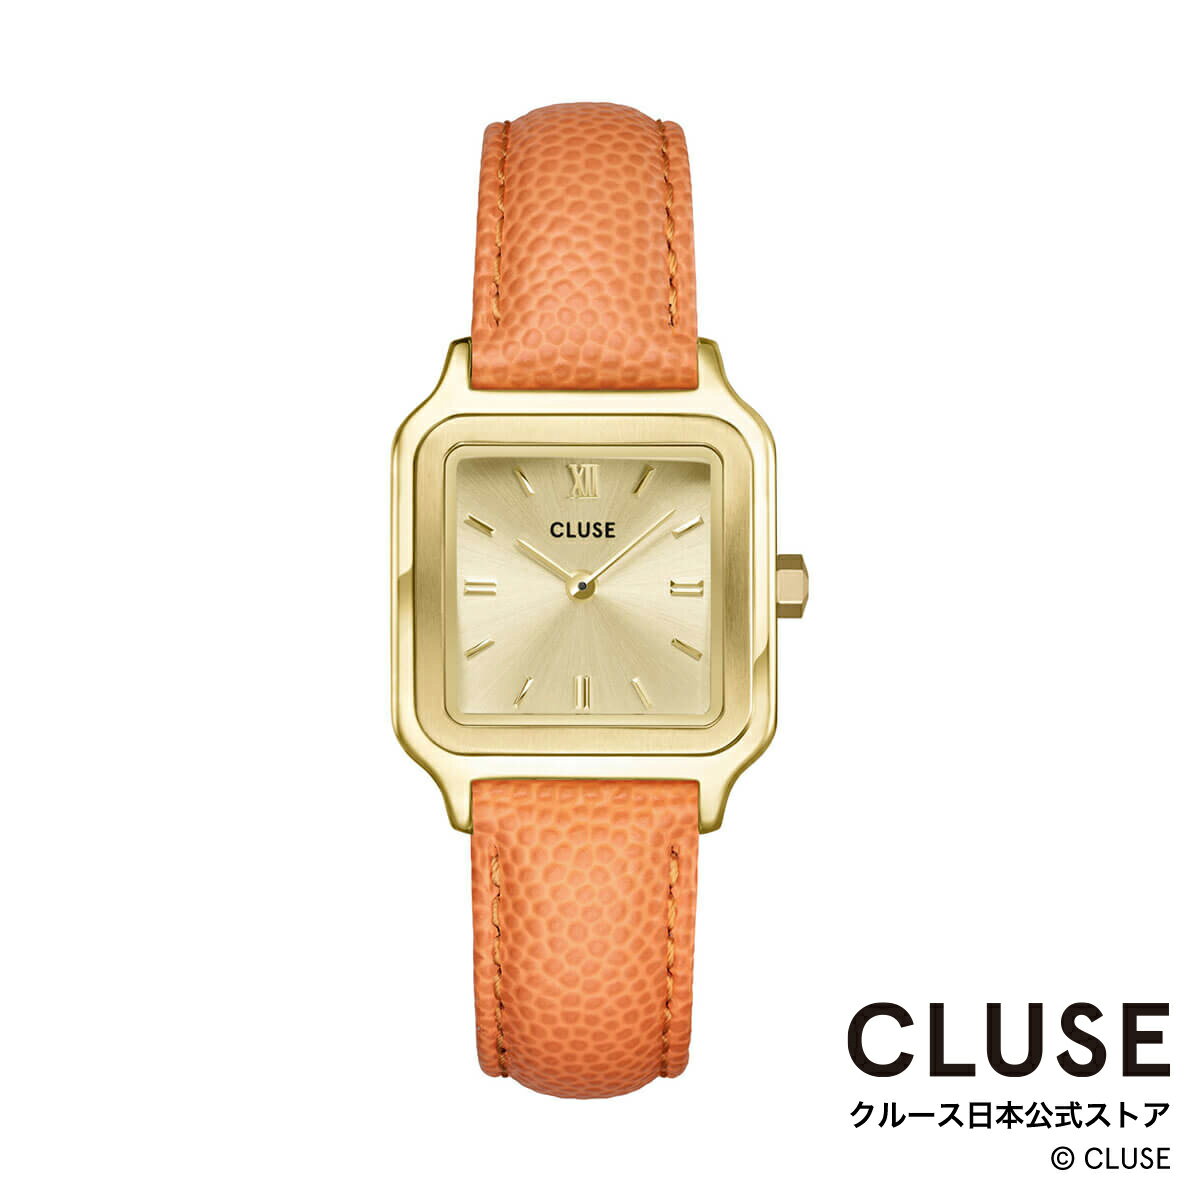 クルース CLUSE 日本公式ストア グラシューズ ペティット ゴールド レザーアプリコット レディース 女性 腕時計 時計 防水 クォーツ